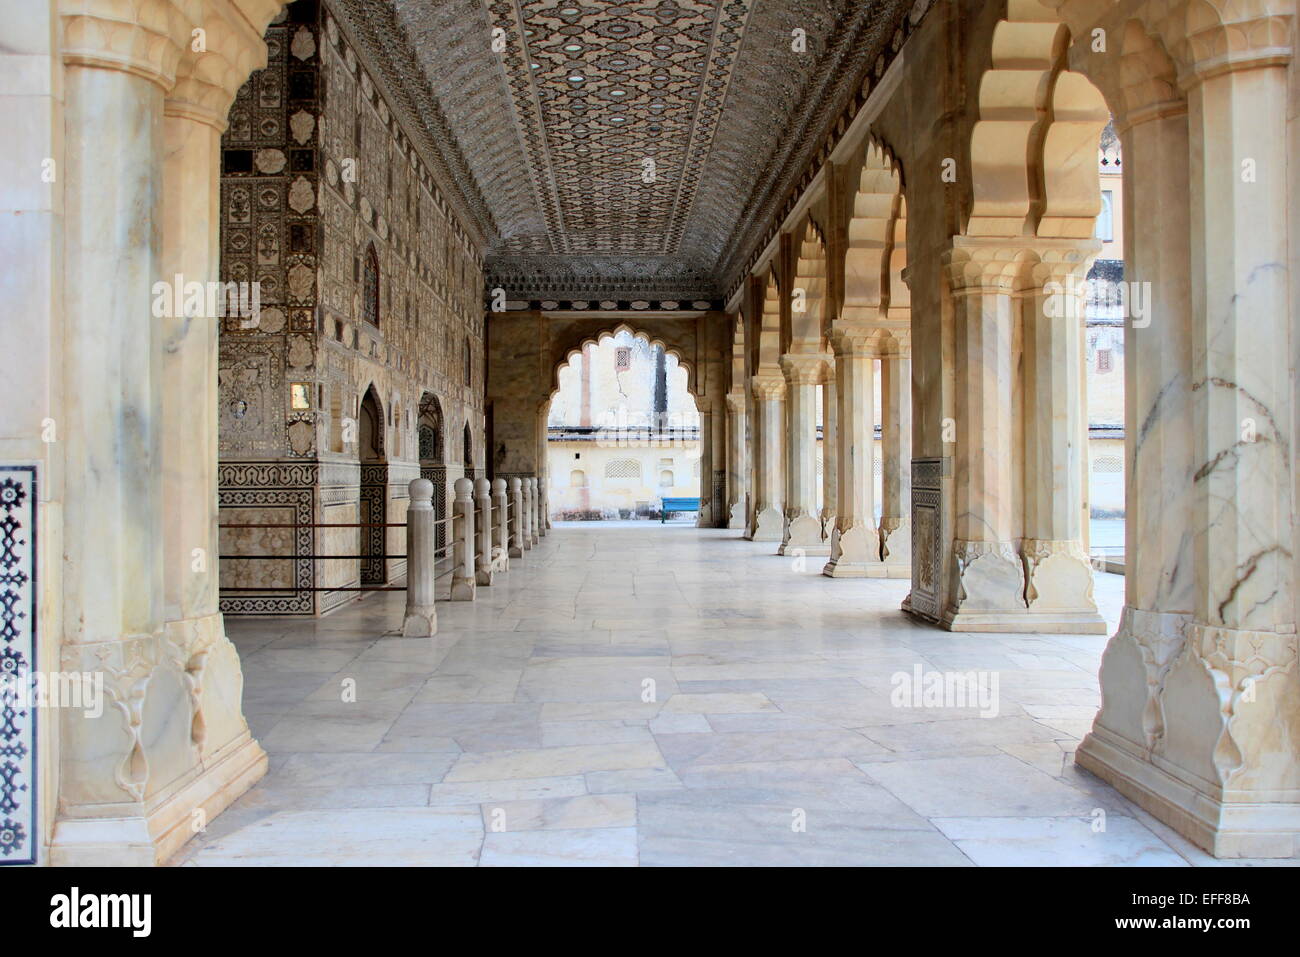 Passaggio arcuato con colonne presso la Sala degli Specchi (Sheesh Mahal) presso amer Palace, Ambra Fort, Jaipur, Rajasthan, India, Asia Foto Stock